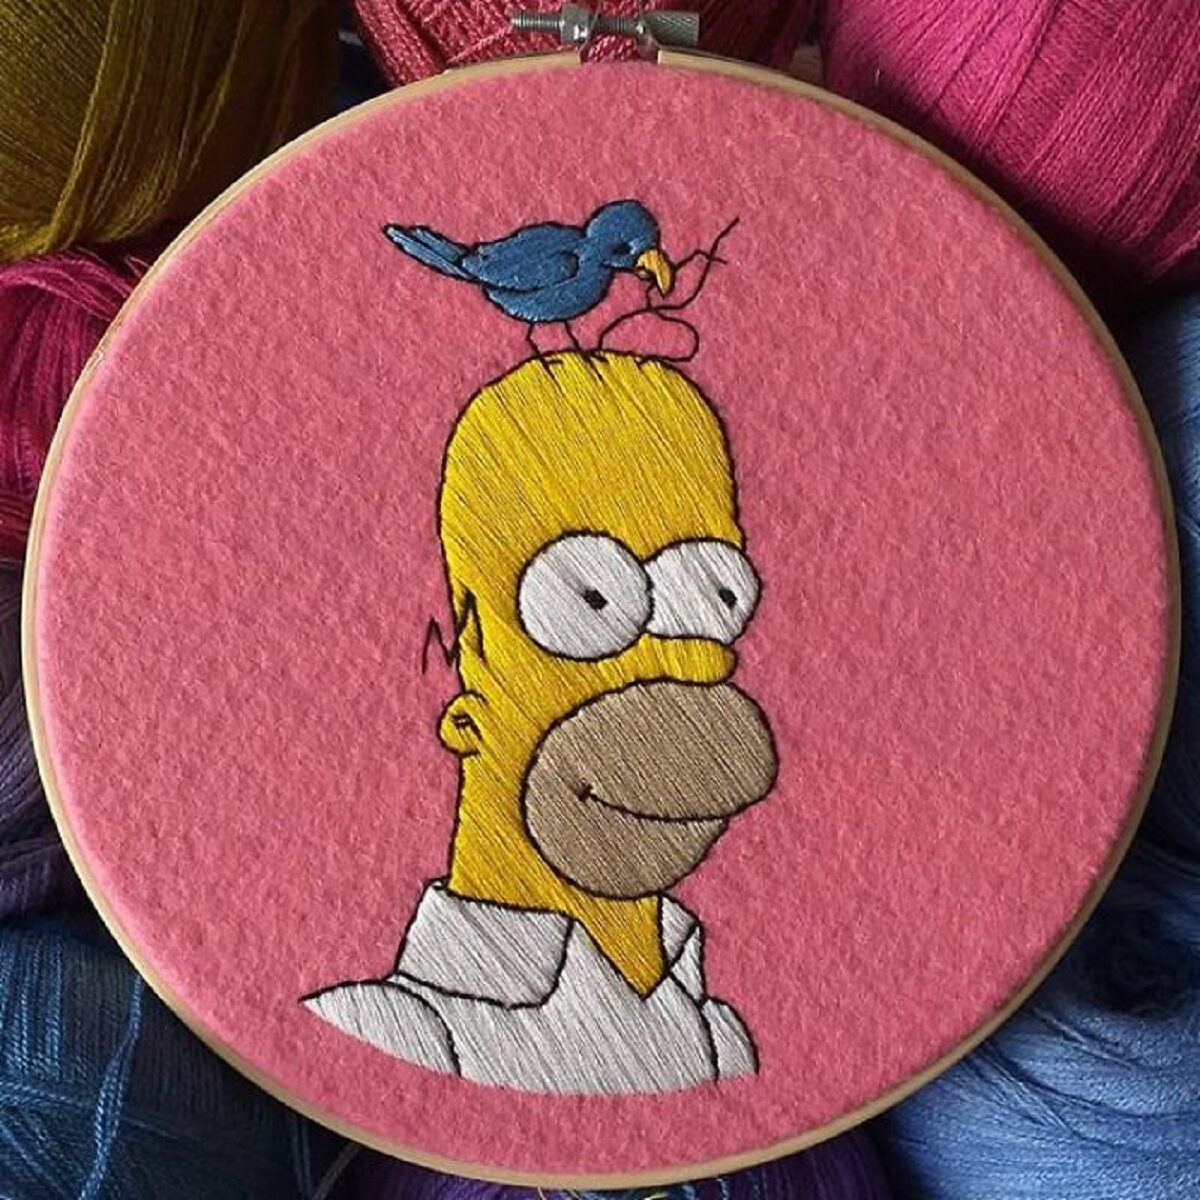 Artista Gabriela Martinez cria bordados de cenas de Os Simpsons 24